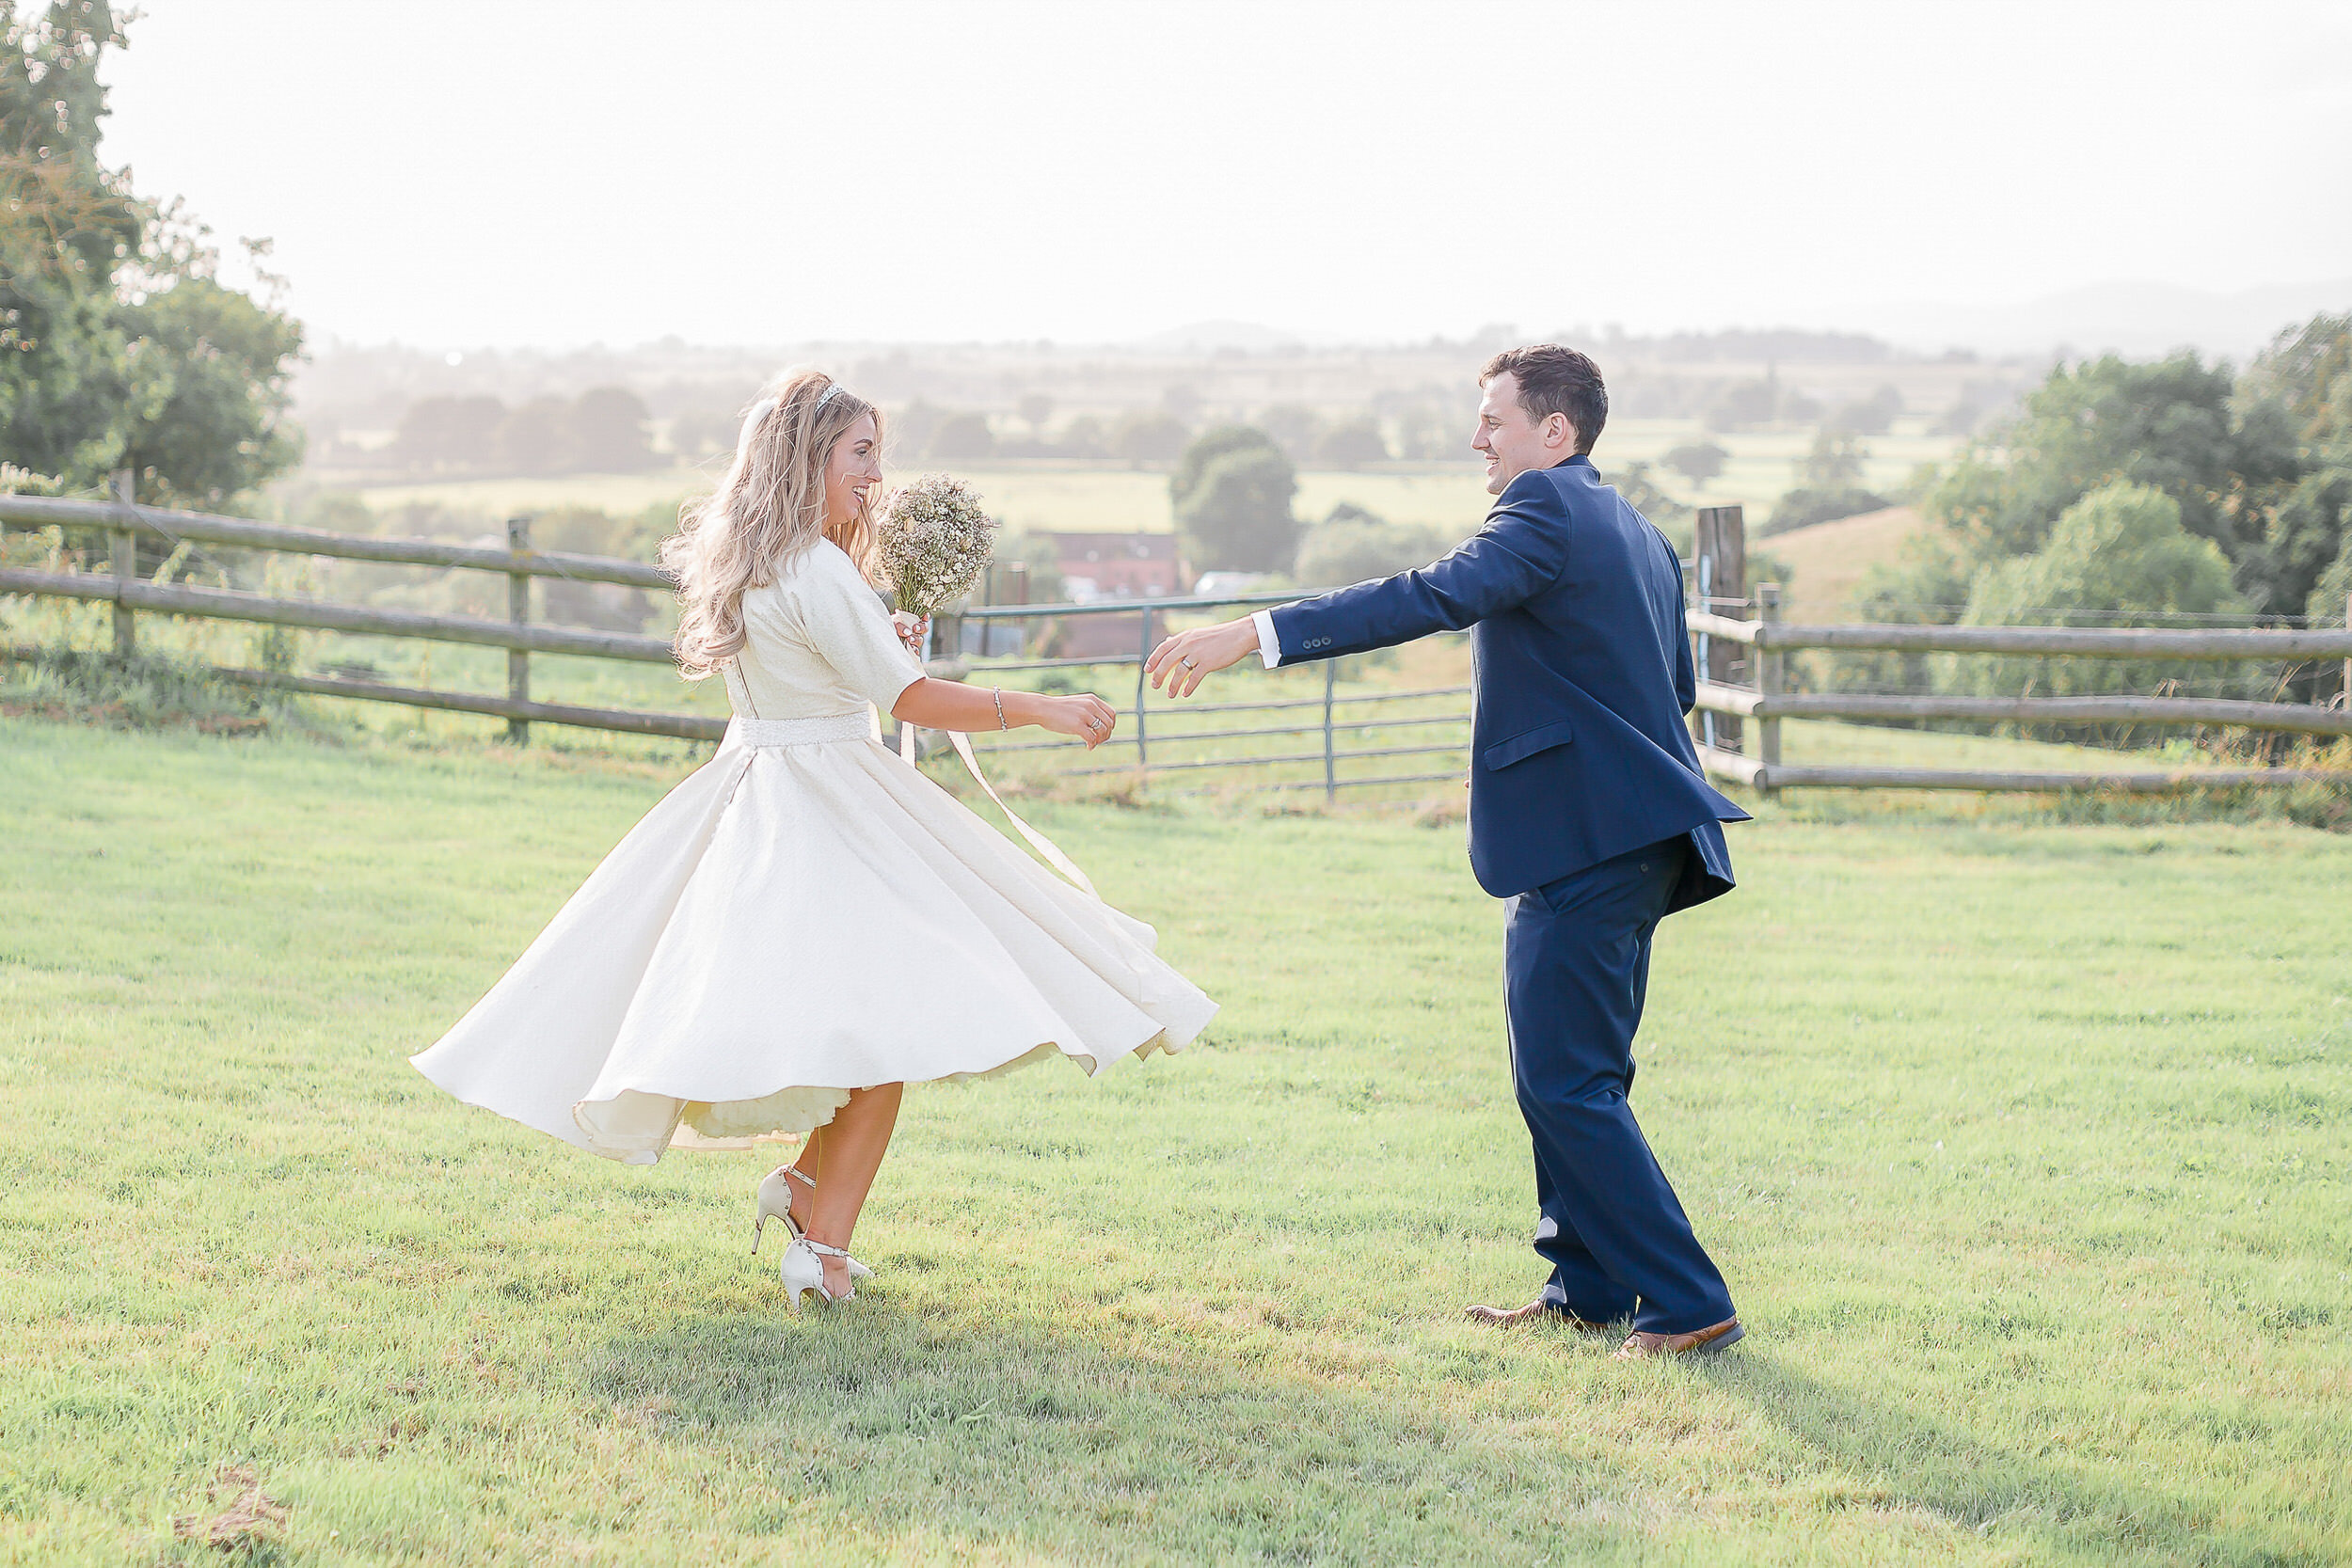 bride-groom-dancing-in-field.jpg